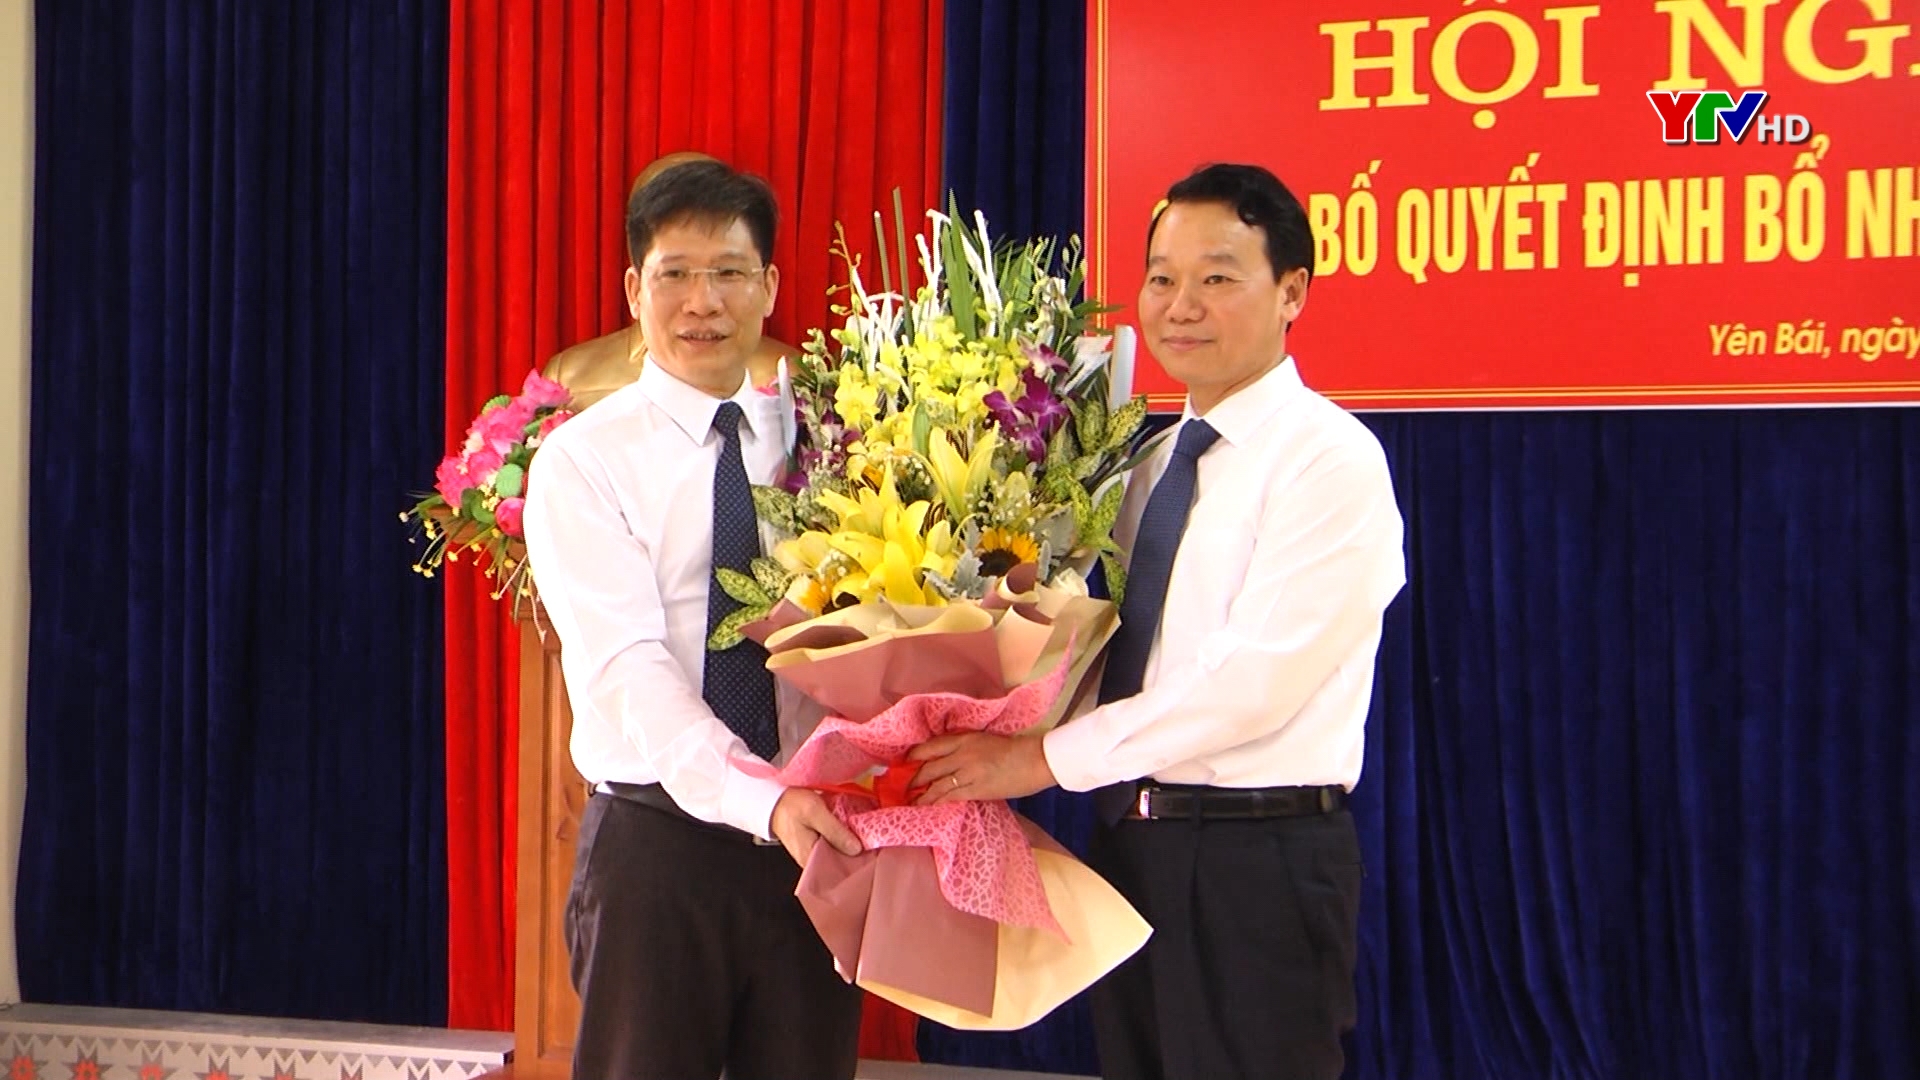 Đồng chí Phó Chủ nhiệm Ủy ban Kiểm tra Tỉnh ủy Trịnh Huỳnh Yên được bổ nhiệm giữ chức Trưởng Ban Quản lý các khu công nghiệp tỉnh